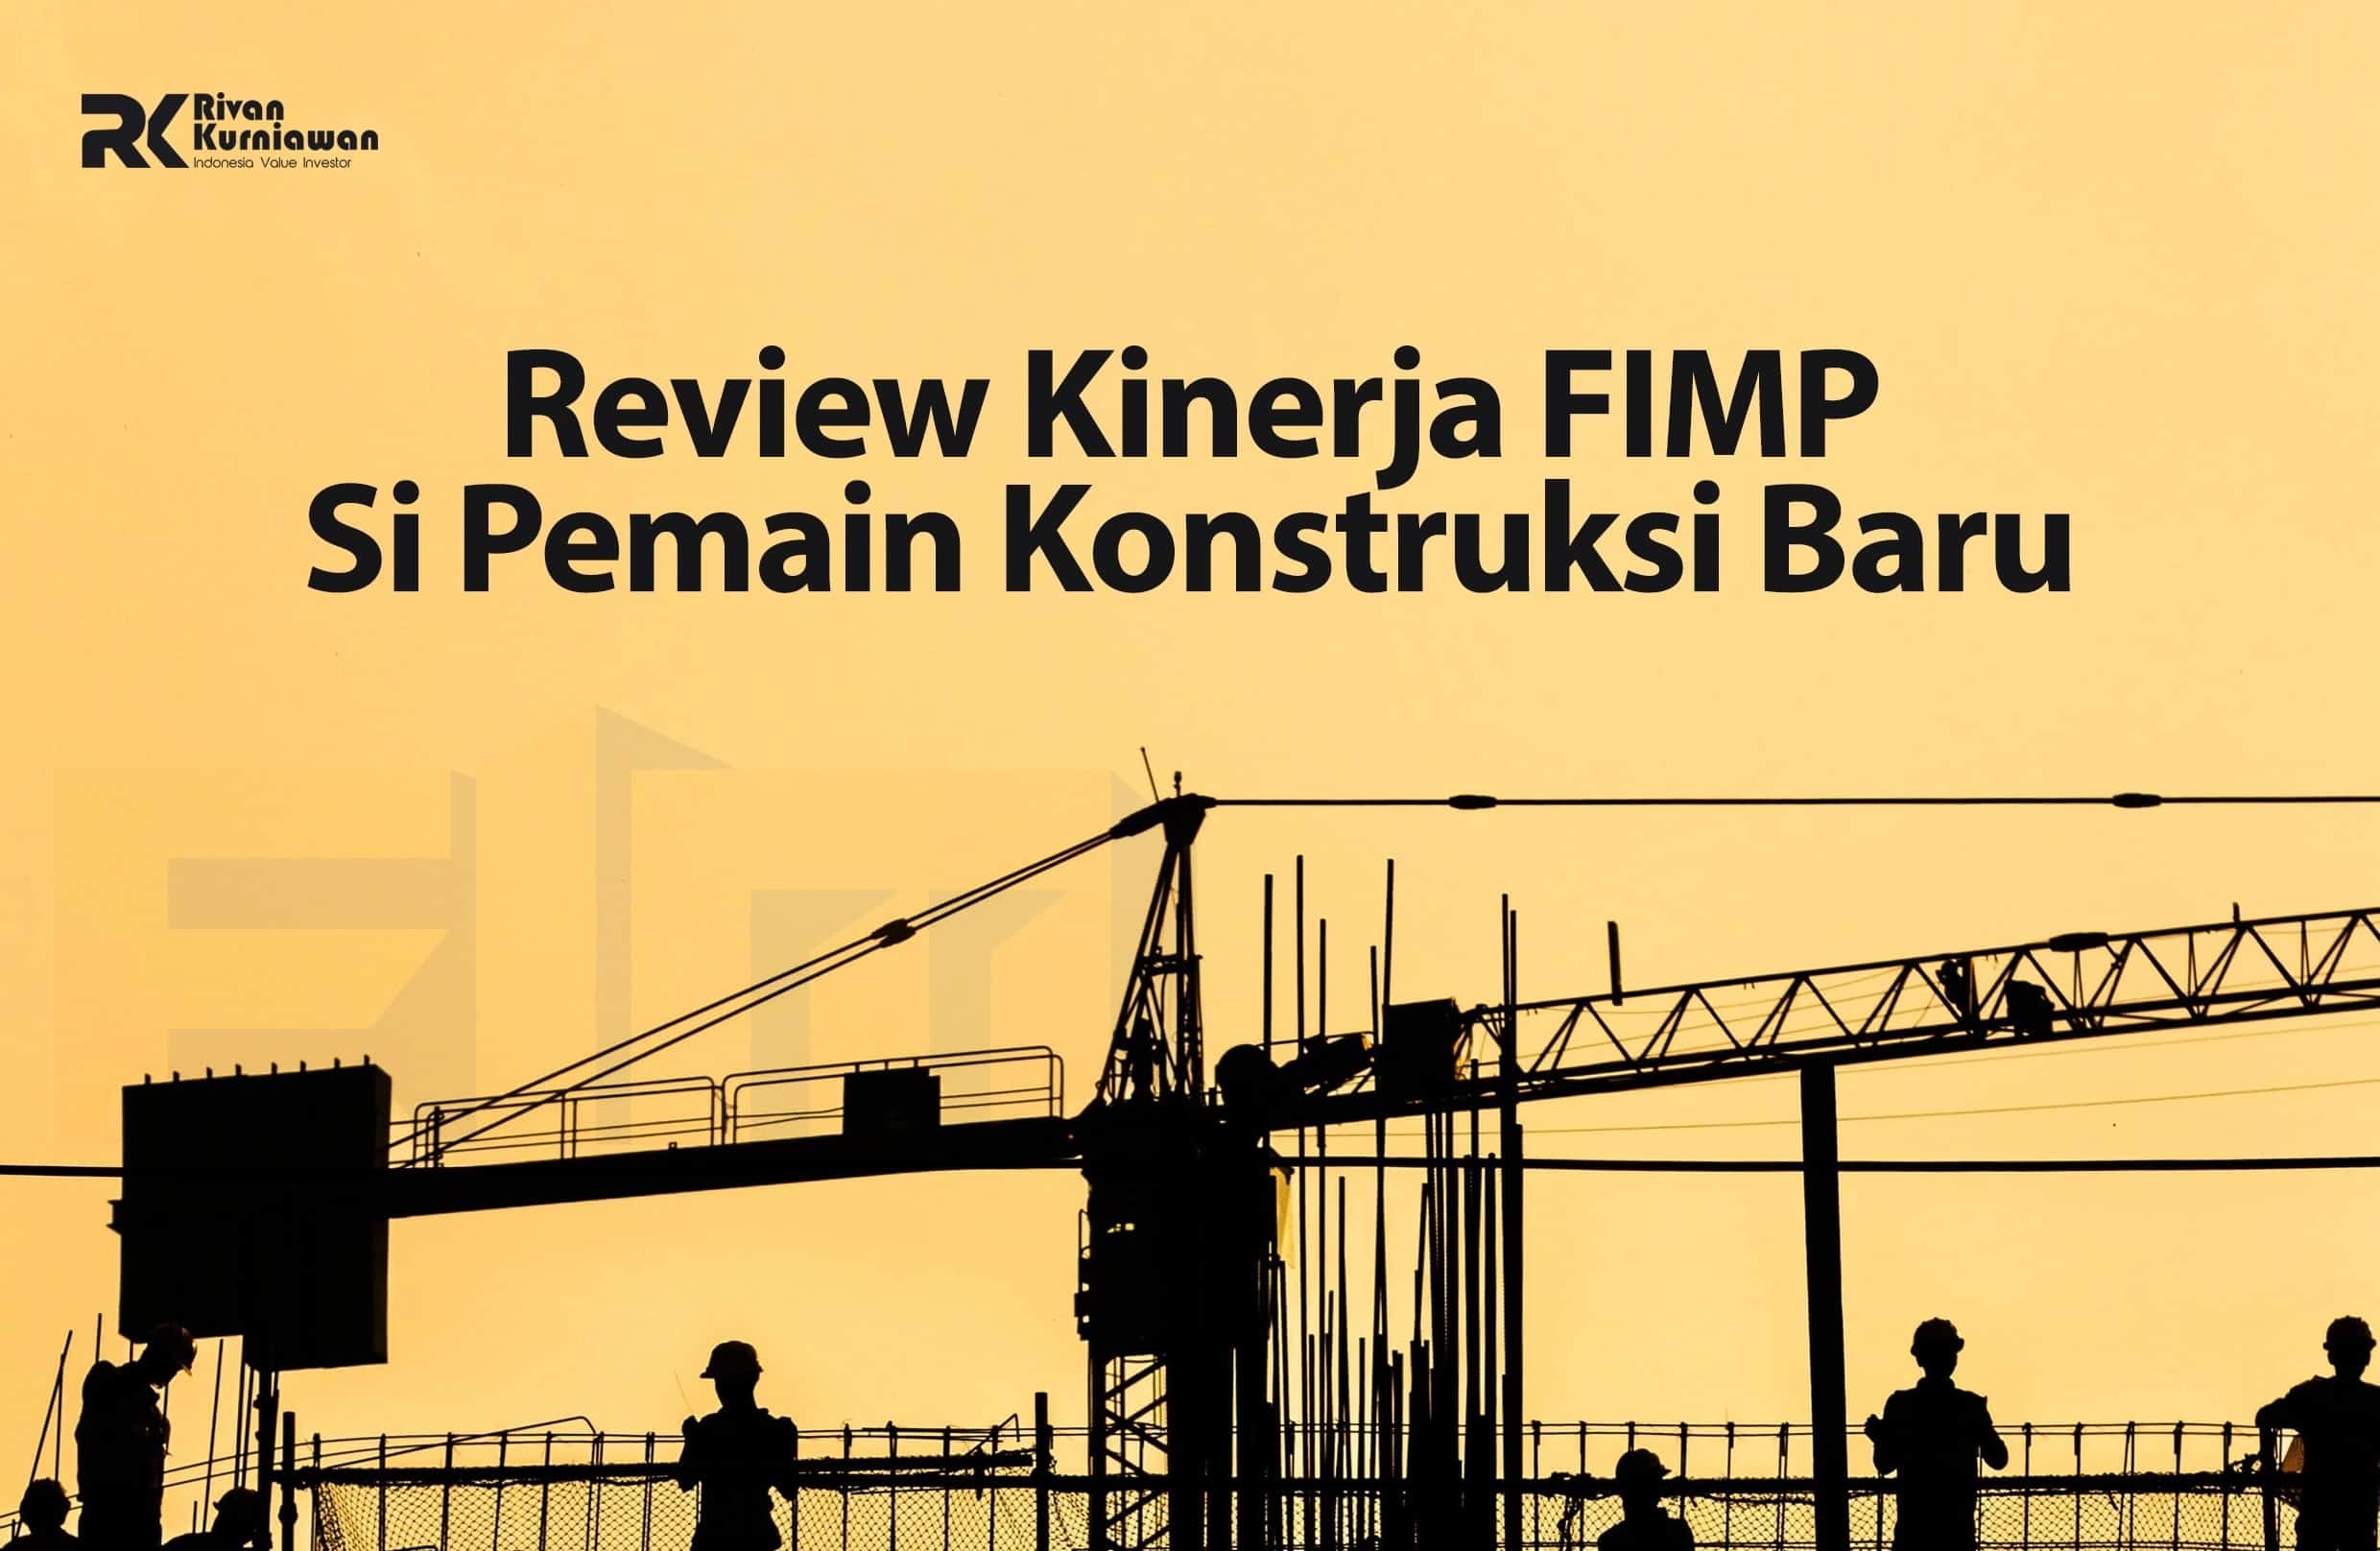 Review Kinerja FIMP Si Pemain Konstruksi Baru